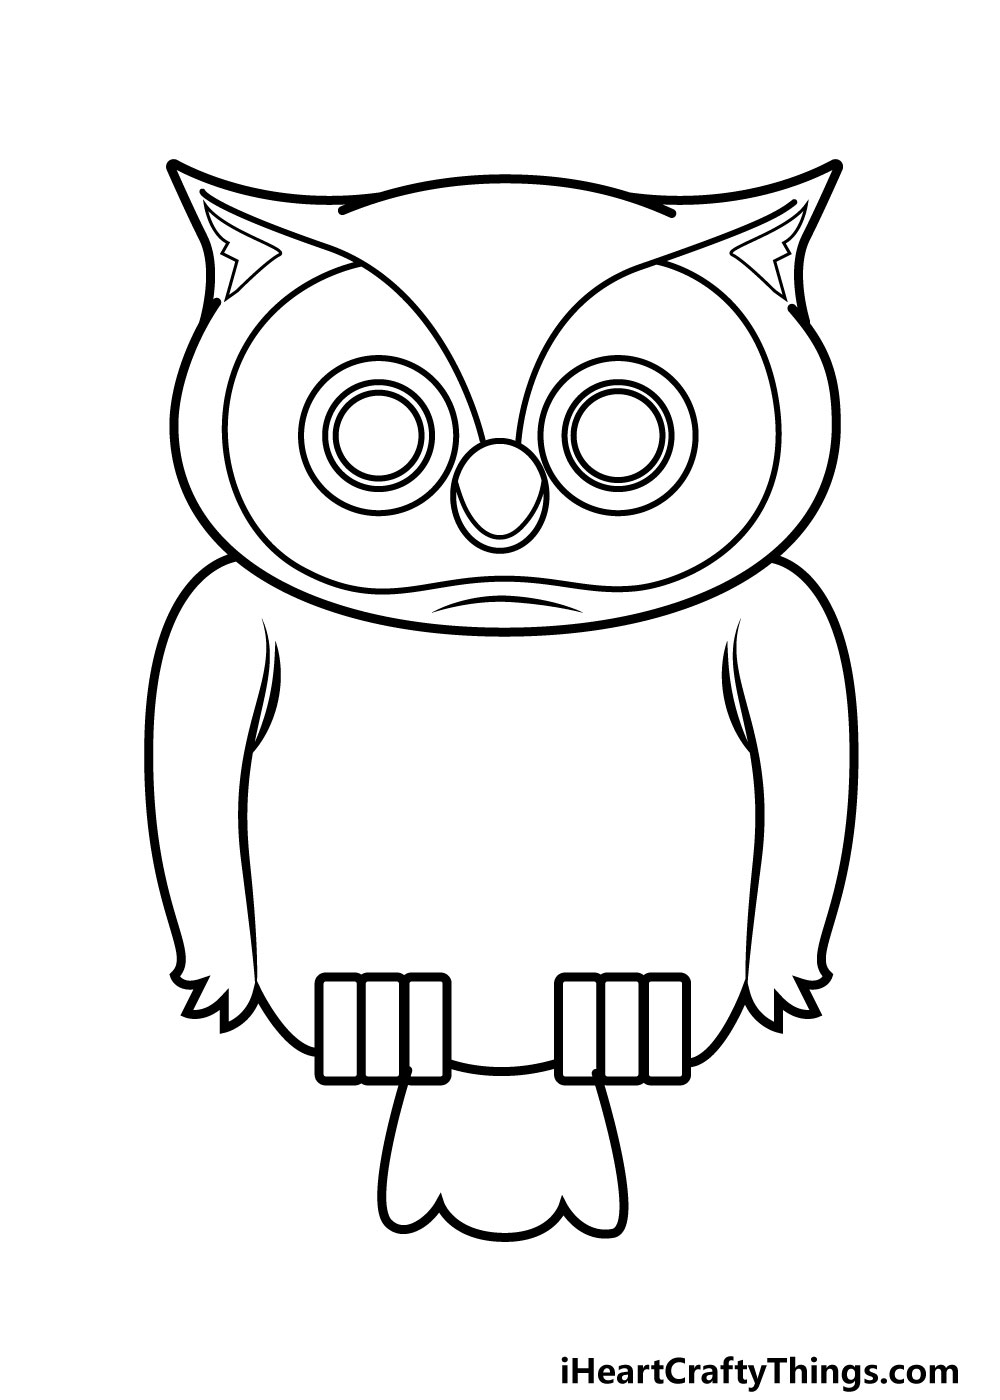 Drawing Owl Step 7 - Hướng dẫn chi tiết cách vẽ cú mèo đơn giản gồm 9 bước cơ bản